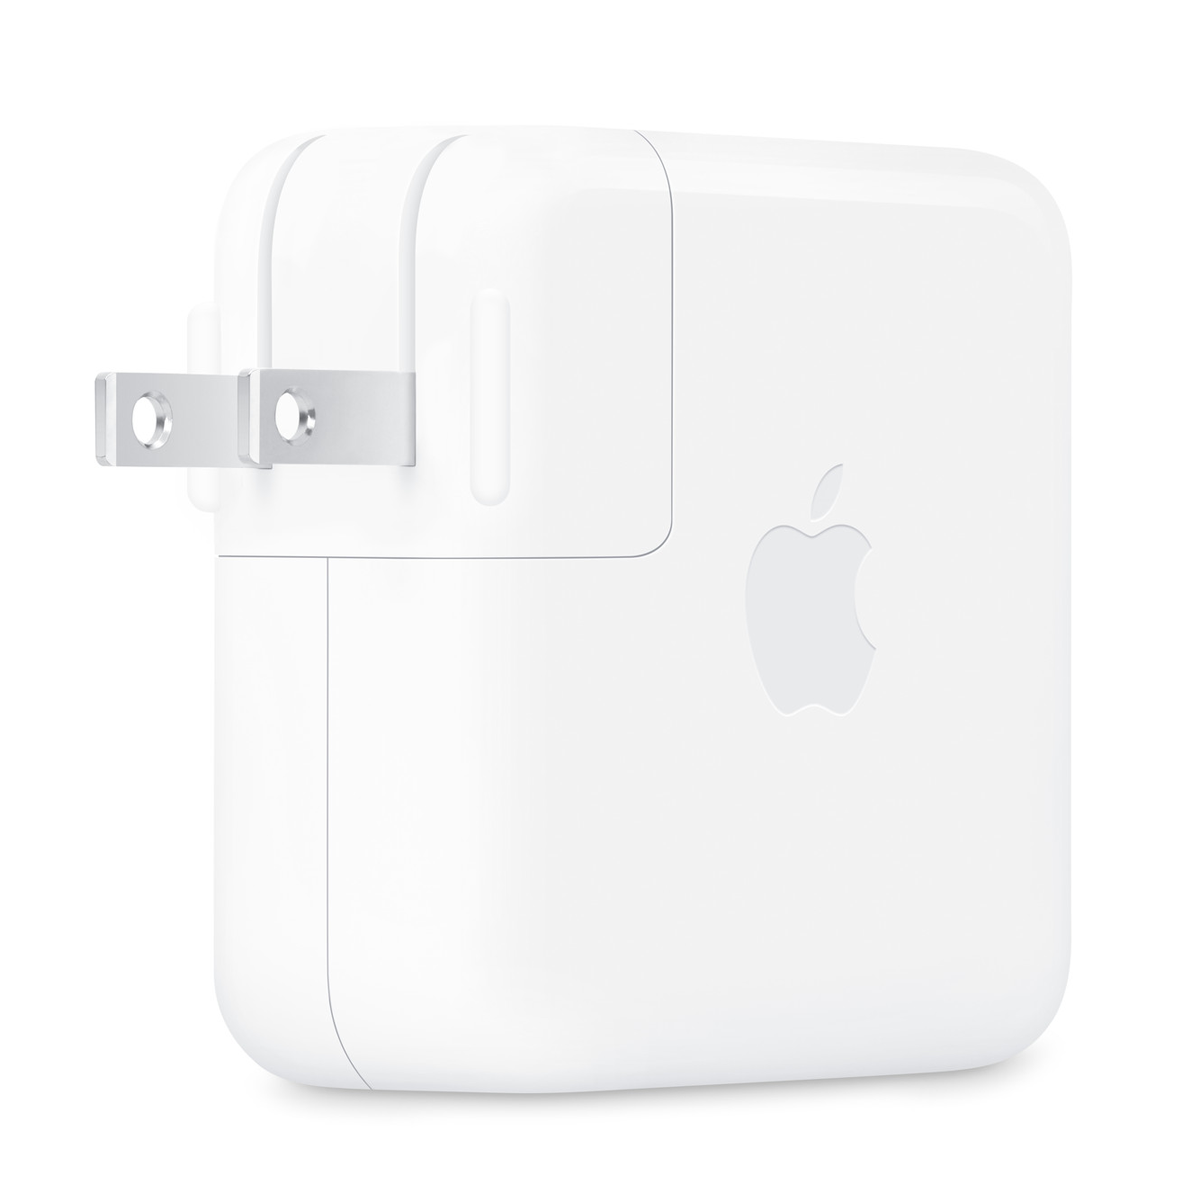 شارژر دیواری اپل مدل USB-C توان 70 وات